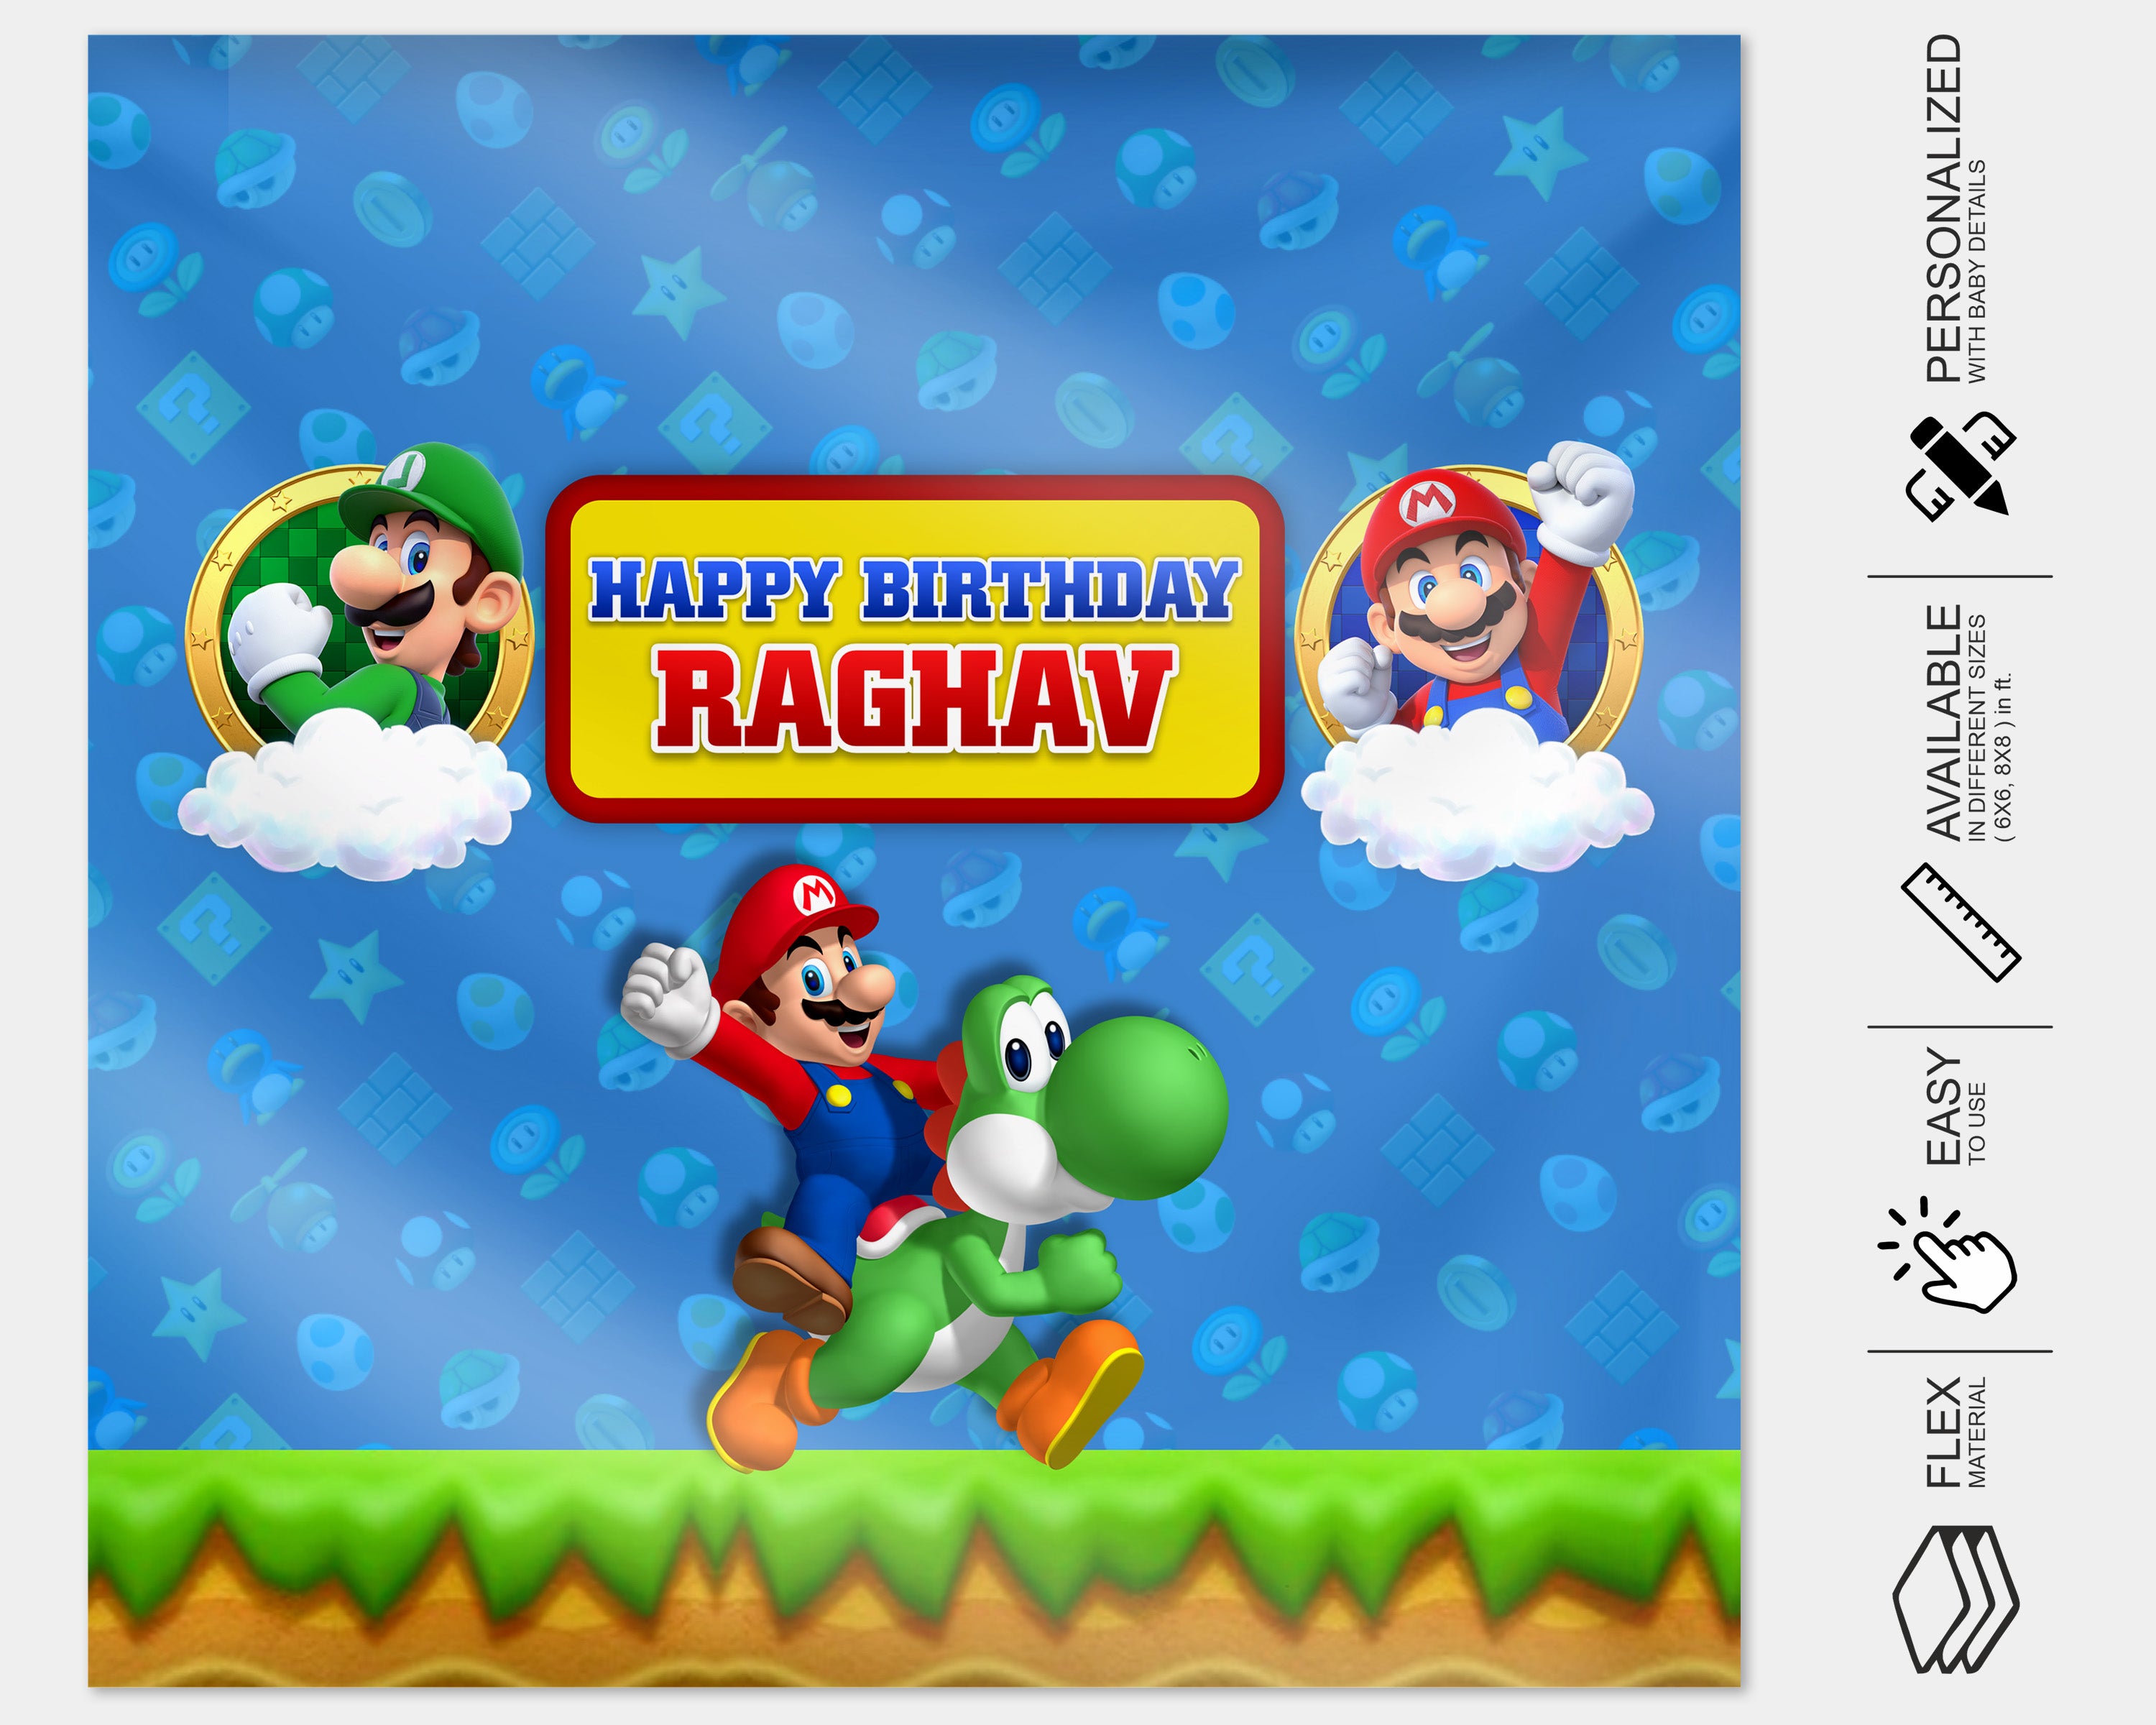 PSI Super Mario Theme Customized Square Backdrop